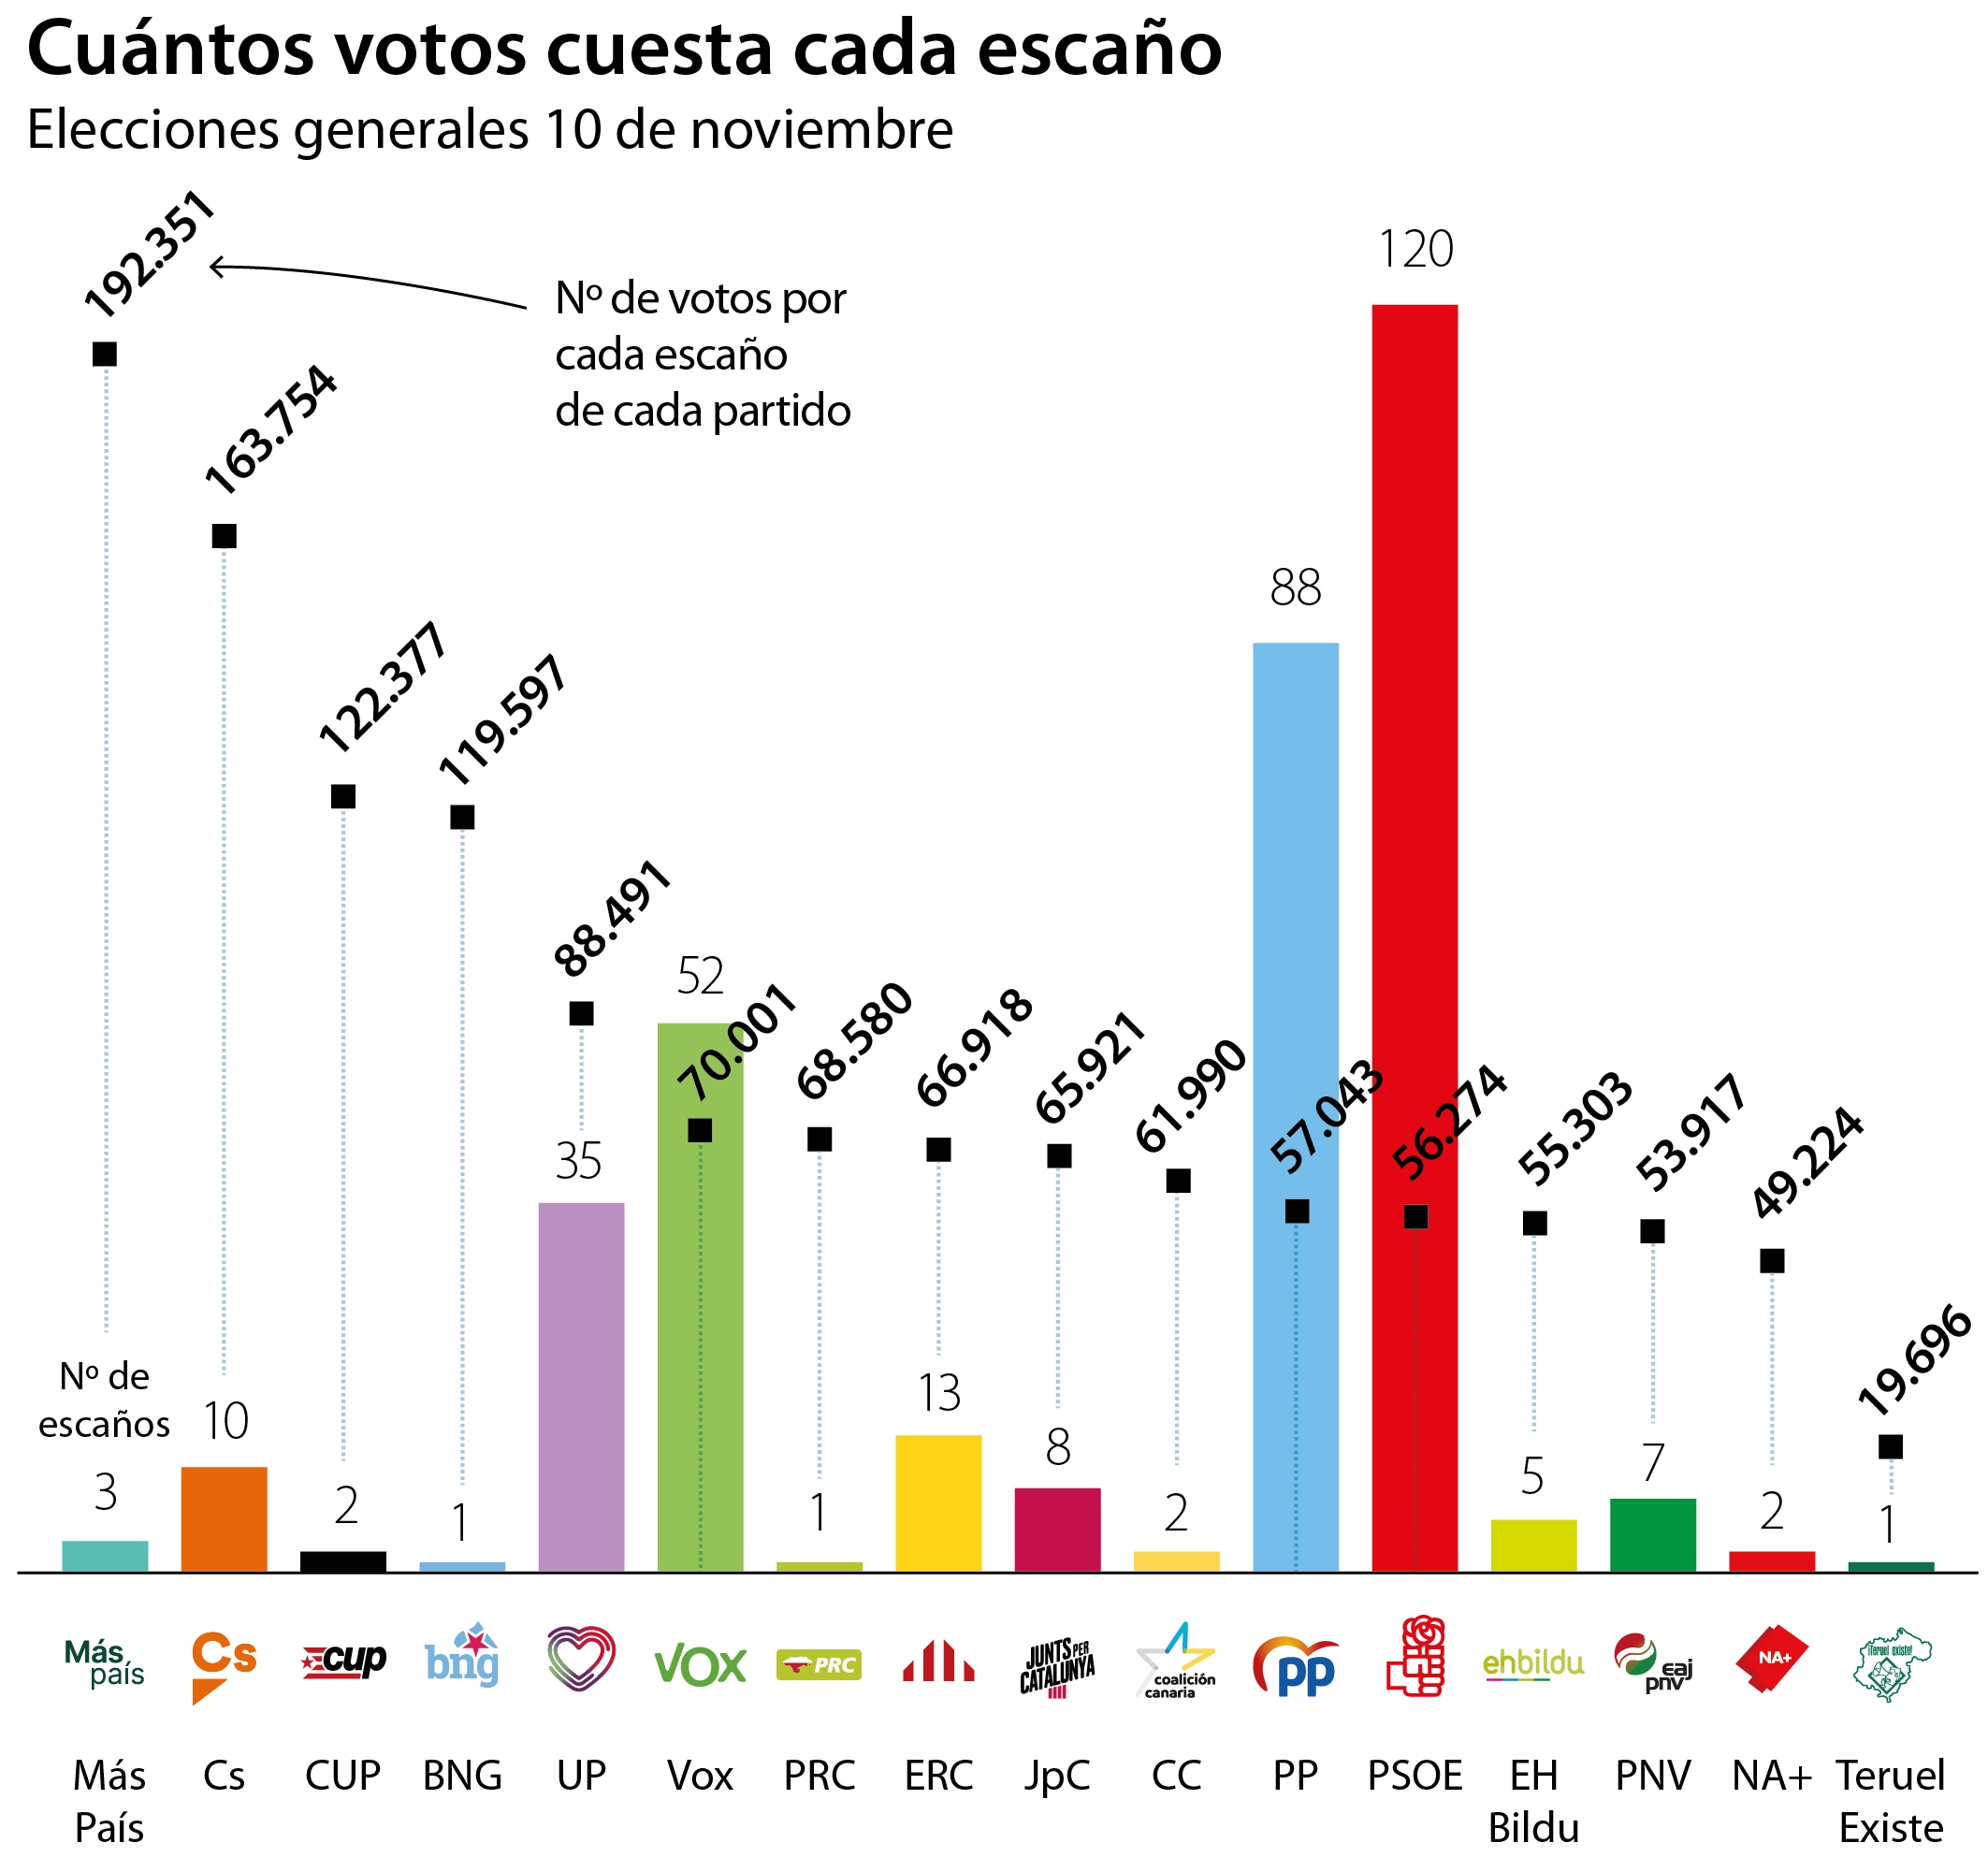 Estos datos no cuentan todavía el escaño que PP le ha ganado al PNV en Vizcaya tras el recuento del voto extranjerto